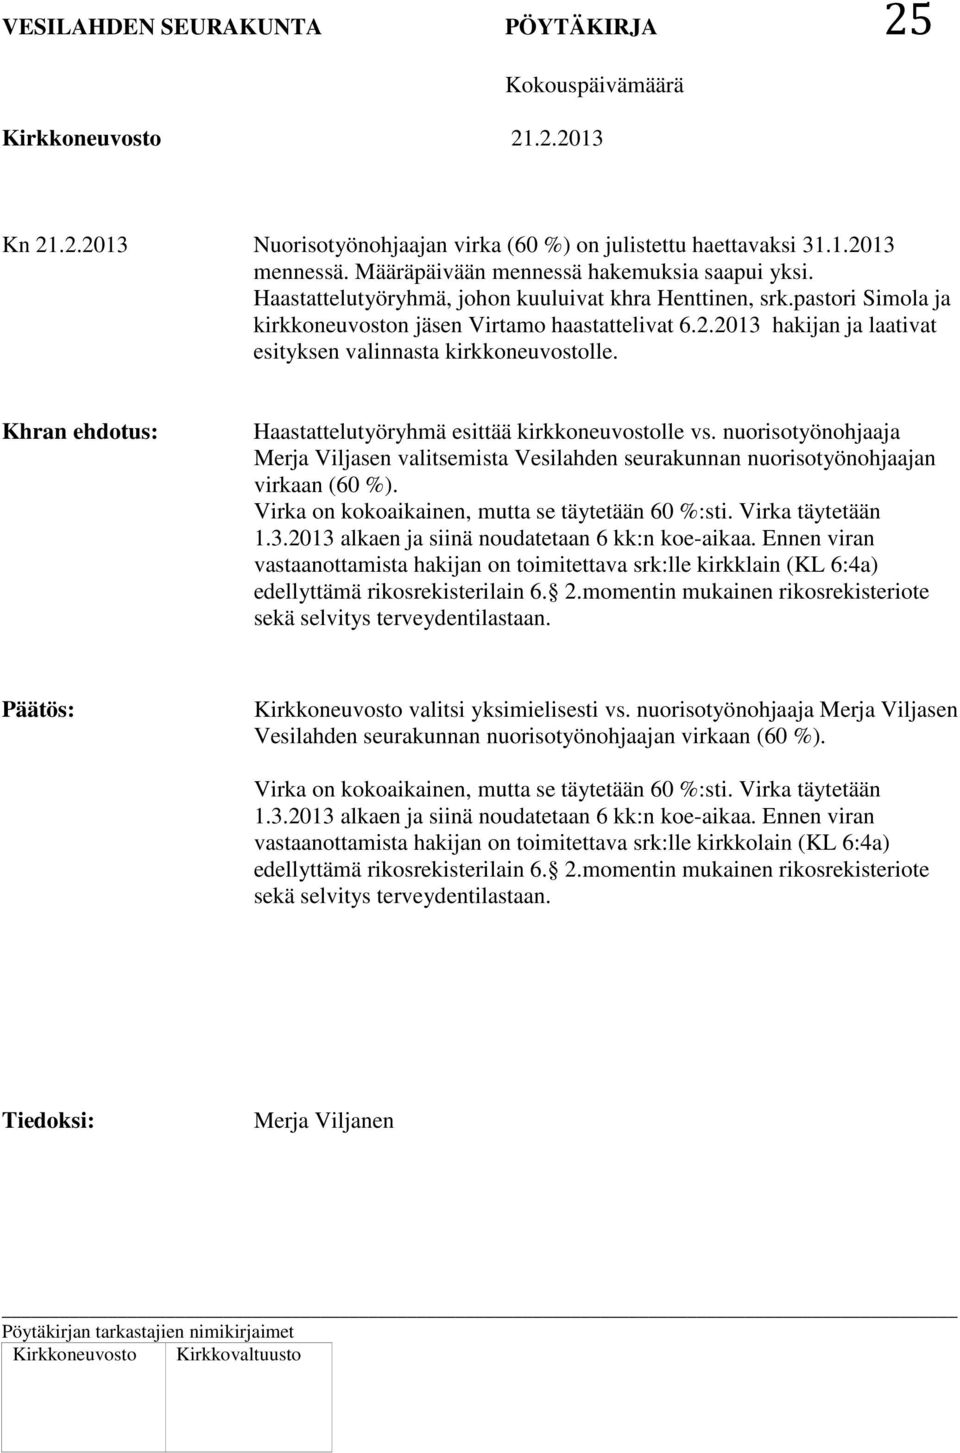 Khran ehdotus: Haastattelutyöryhmä esittää kirkkoneuvostolle vs. nuorisotyönohjaaja Merja Viljasen valitsemista Vesilahden seurakunnan nuorisotyönohjaajan virkaan (60 %).